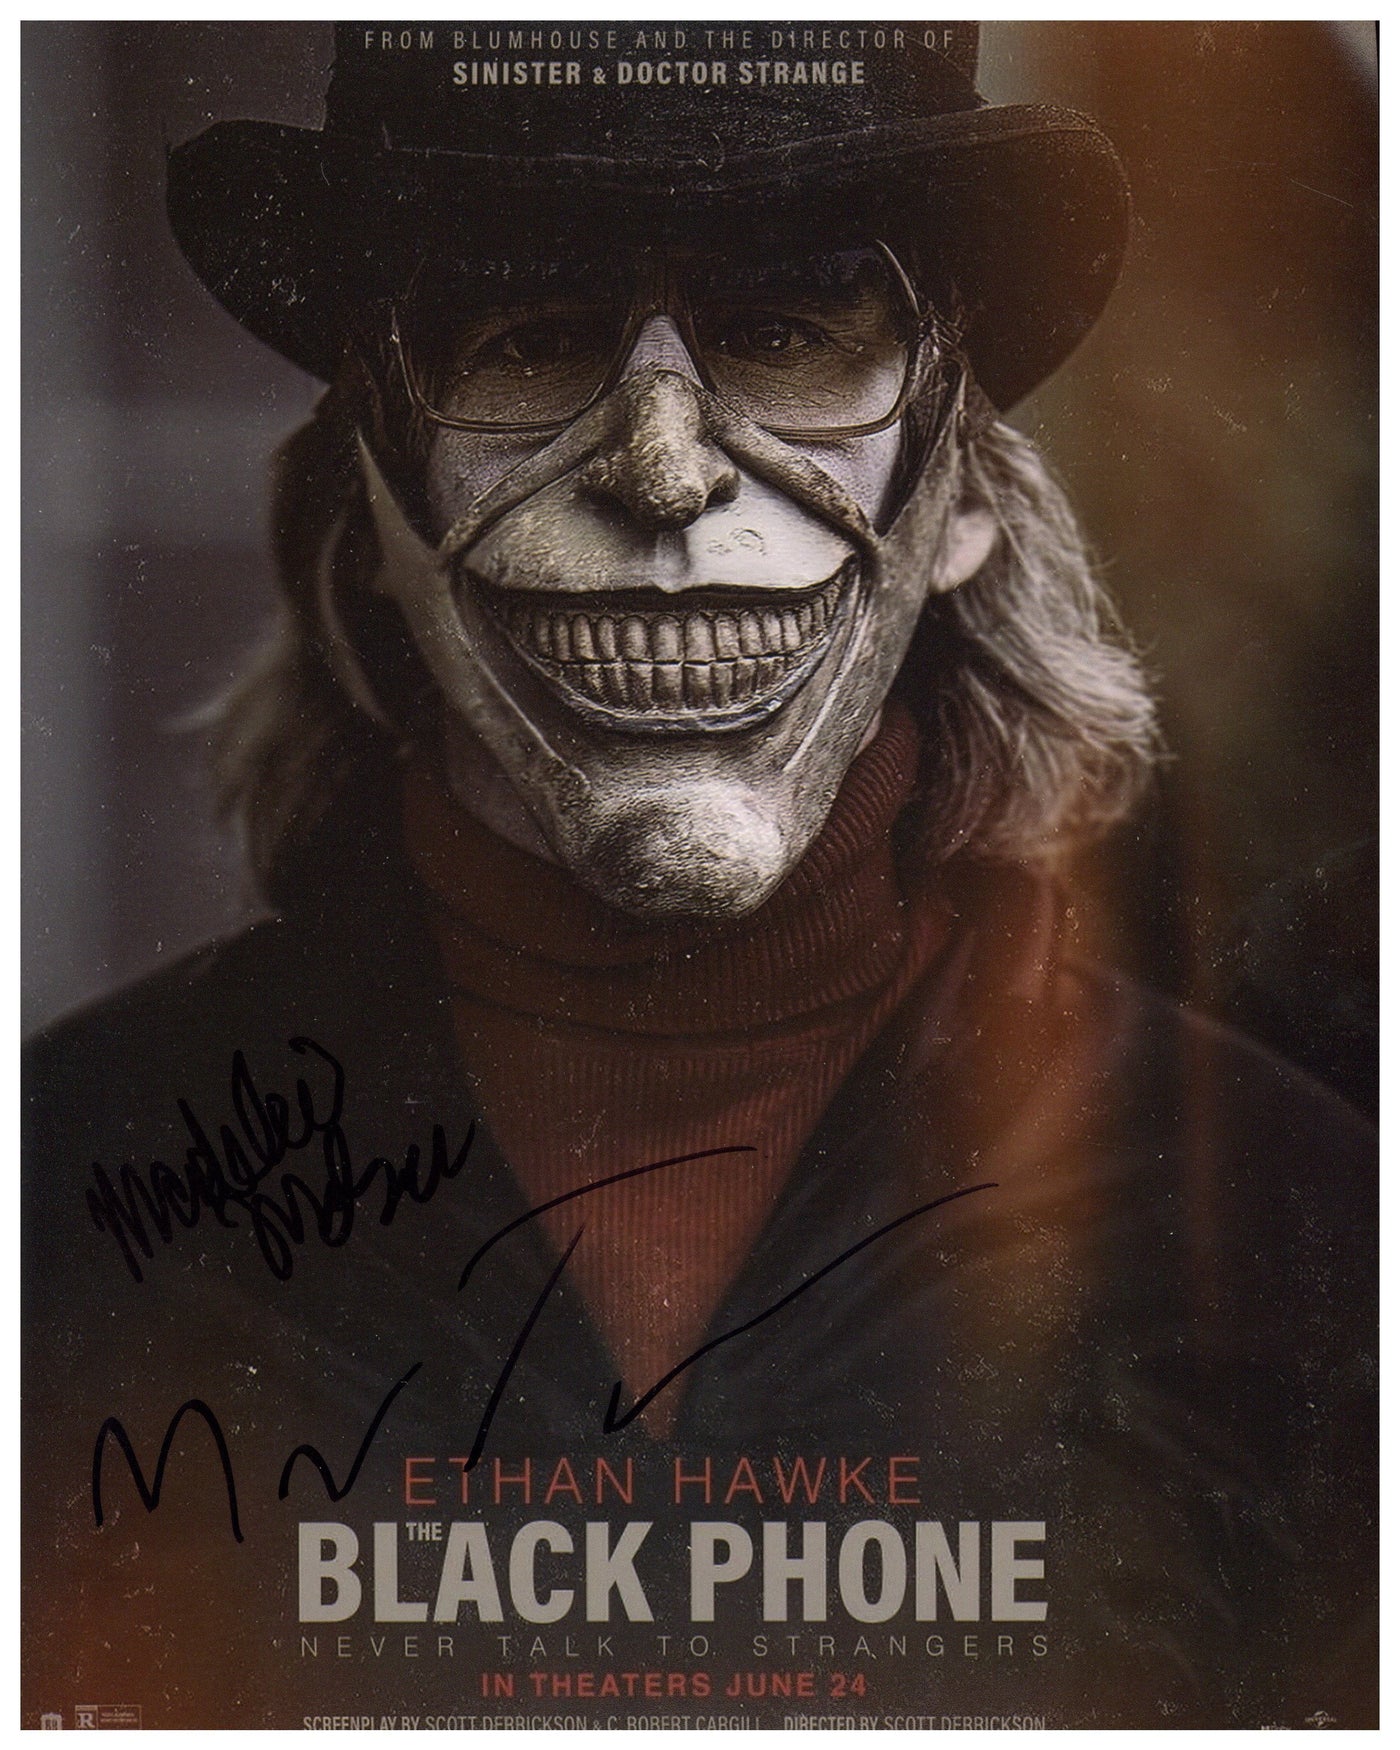 Madeleine McGraw & Mason Thames Signed 8x10 Photo Black Phone Autographed ACOA